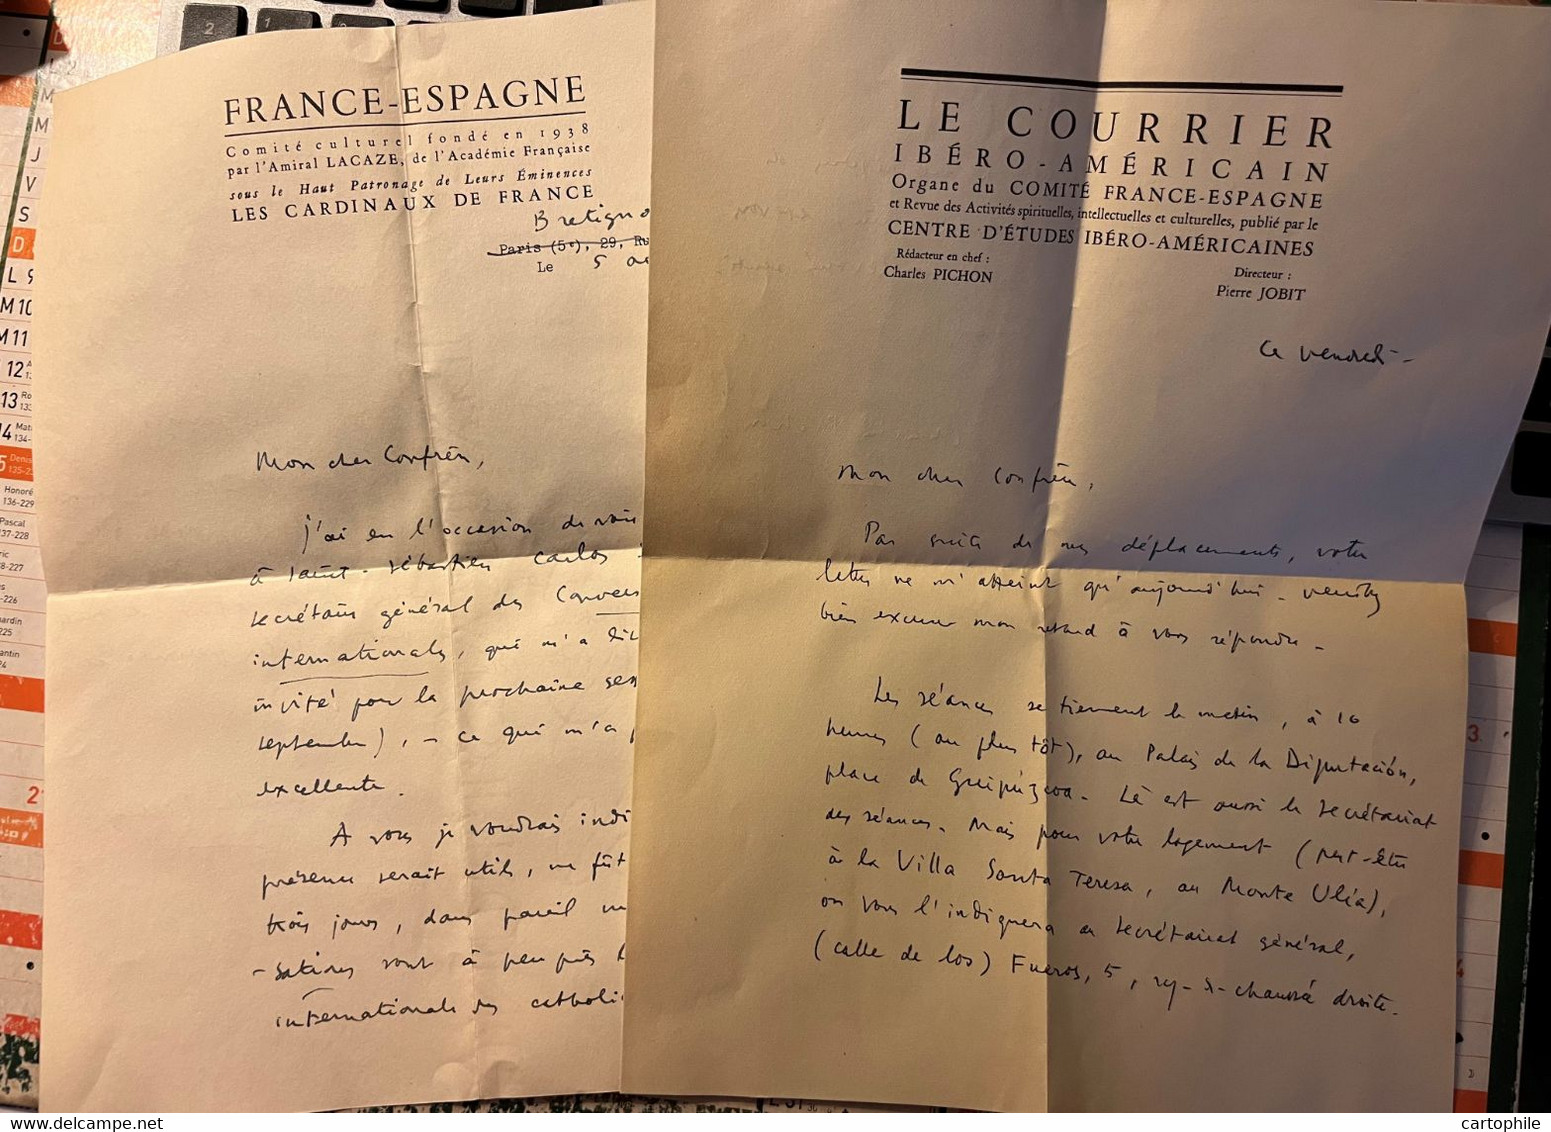 Autographe De Charles Pichon - Courrier Ibero Americain Comite France Espagne 1957 Esperanto Religion Papauté Vatican - Manuscripts